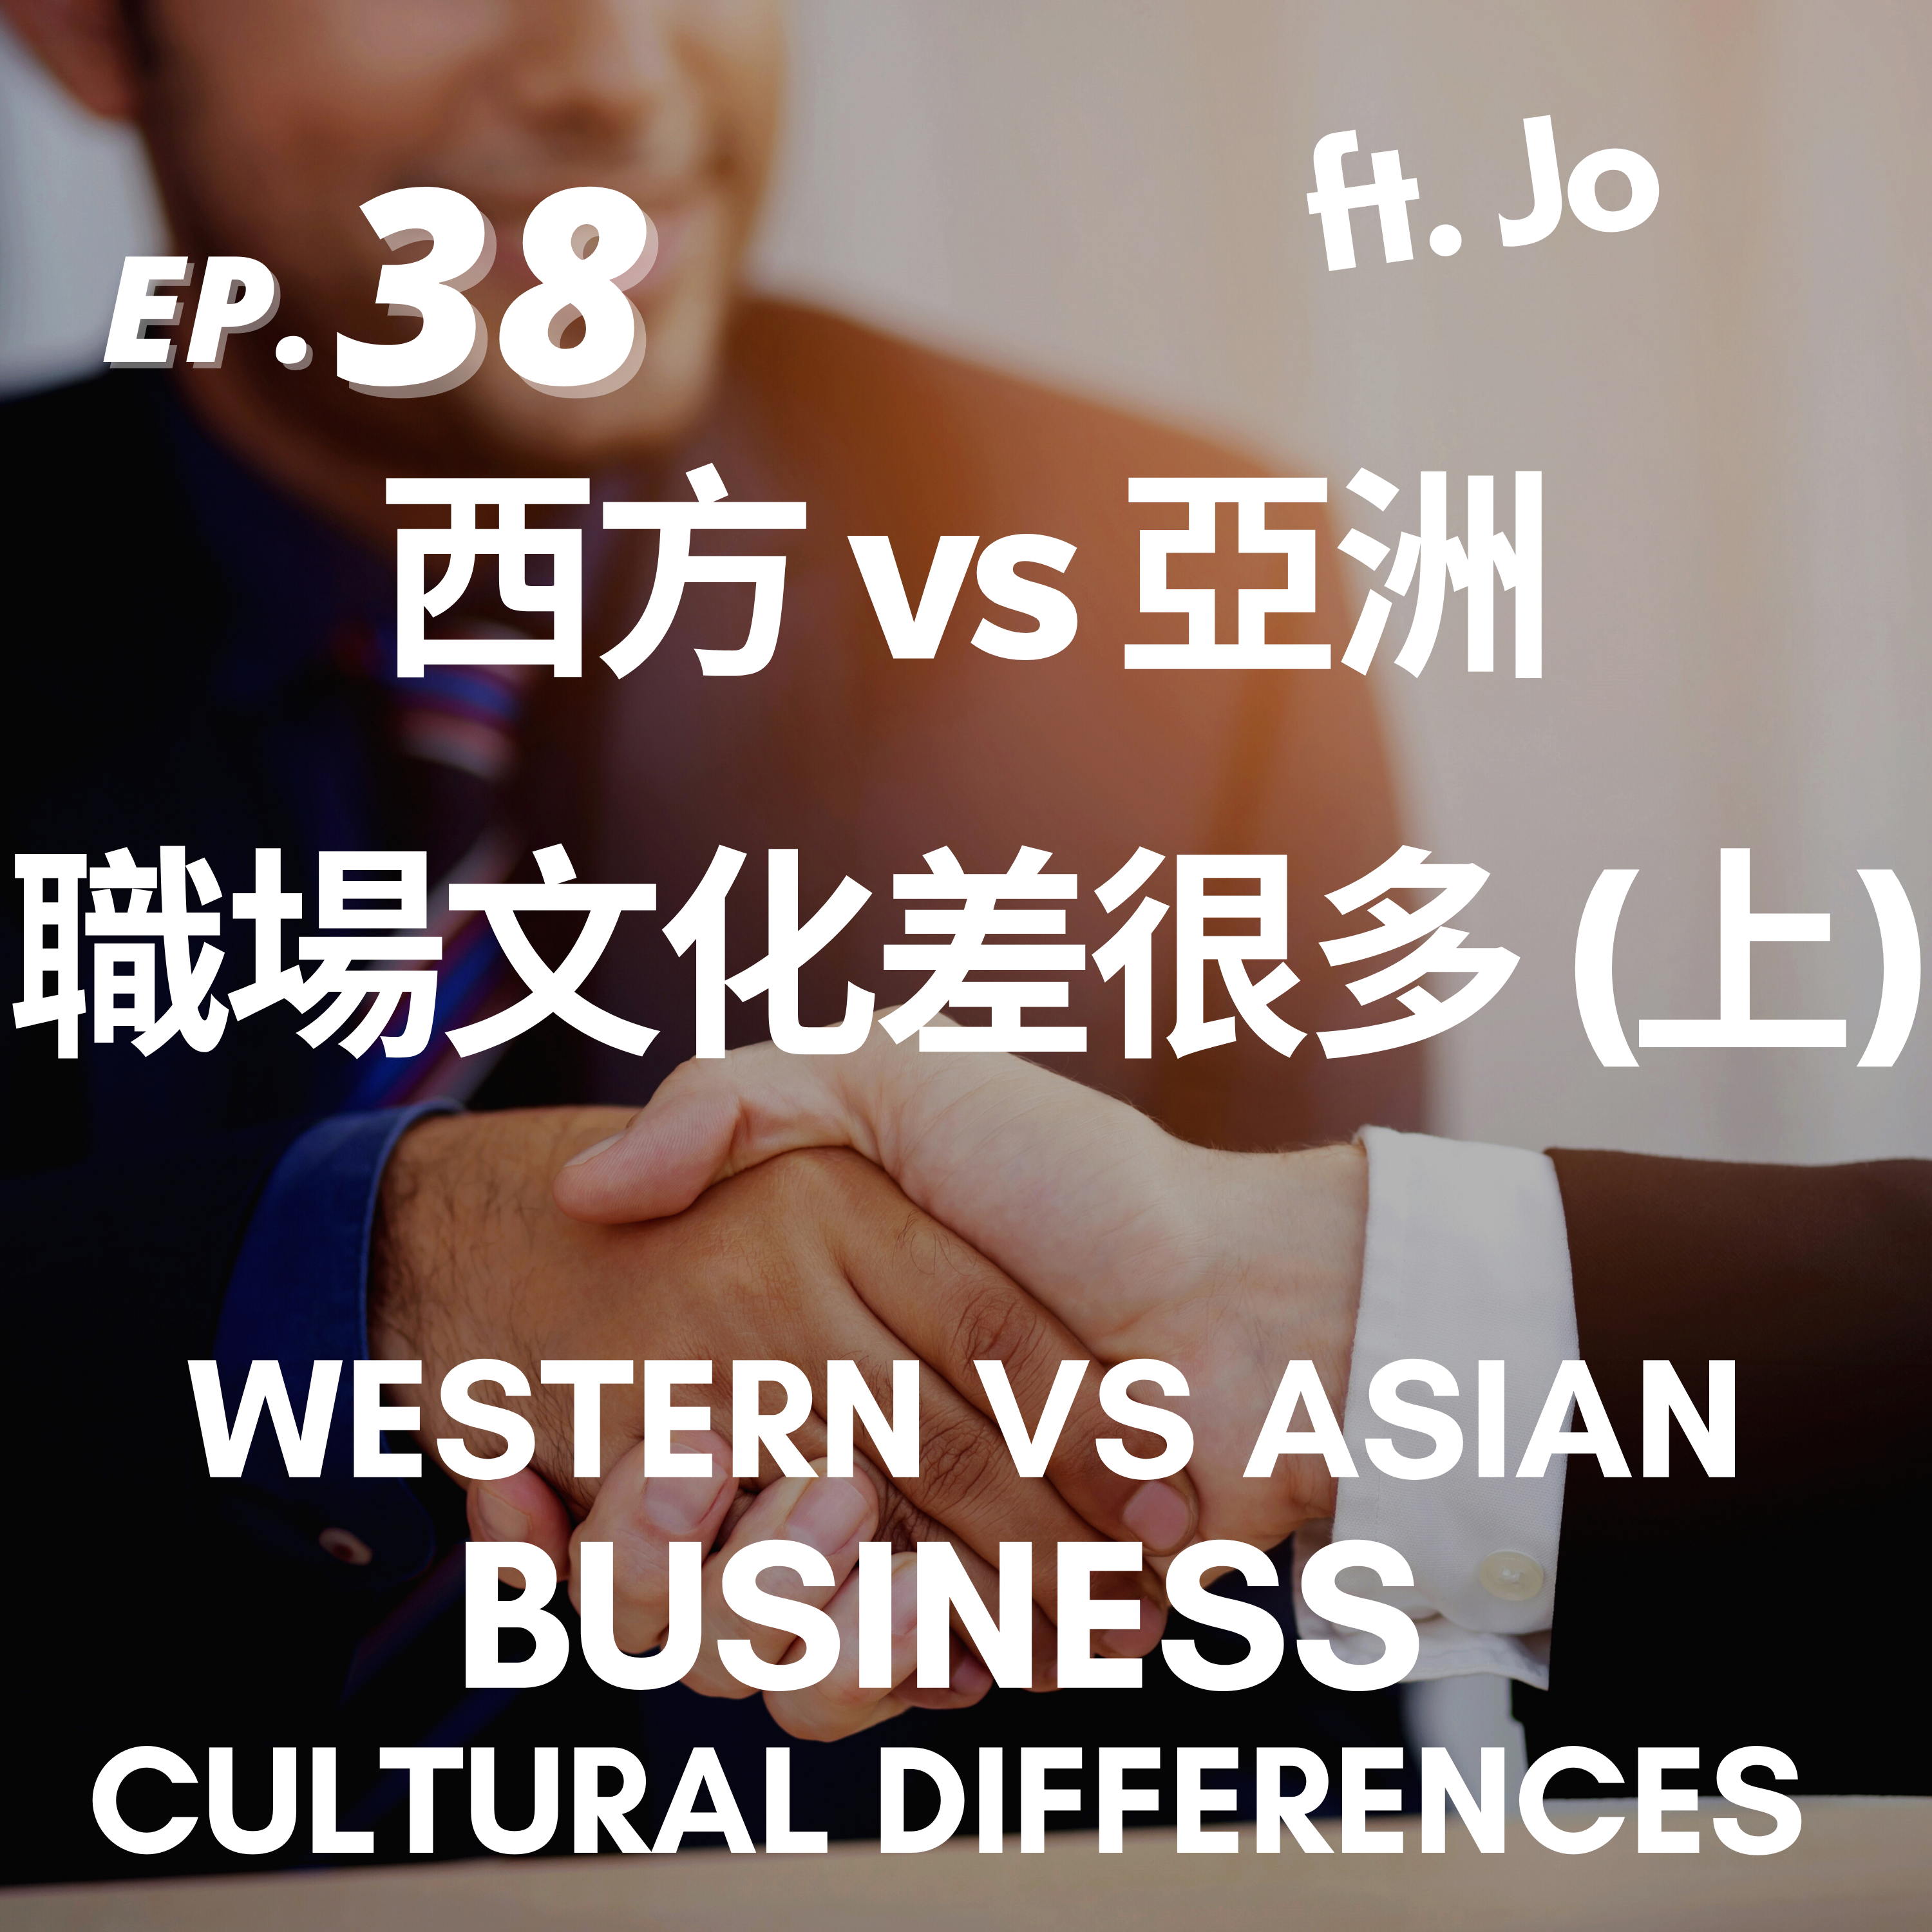 38. 職場文化差很多｜西方 vs 亞洲(上)Business Cultural Differences #1 Western vs Asian ft. Jo